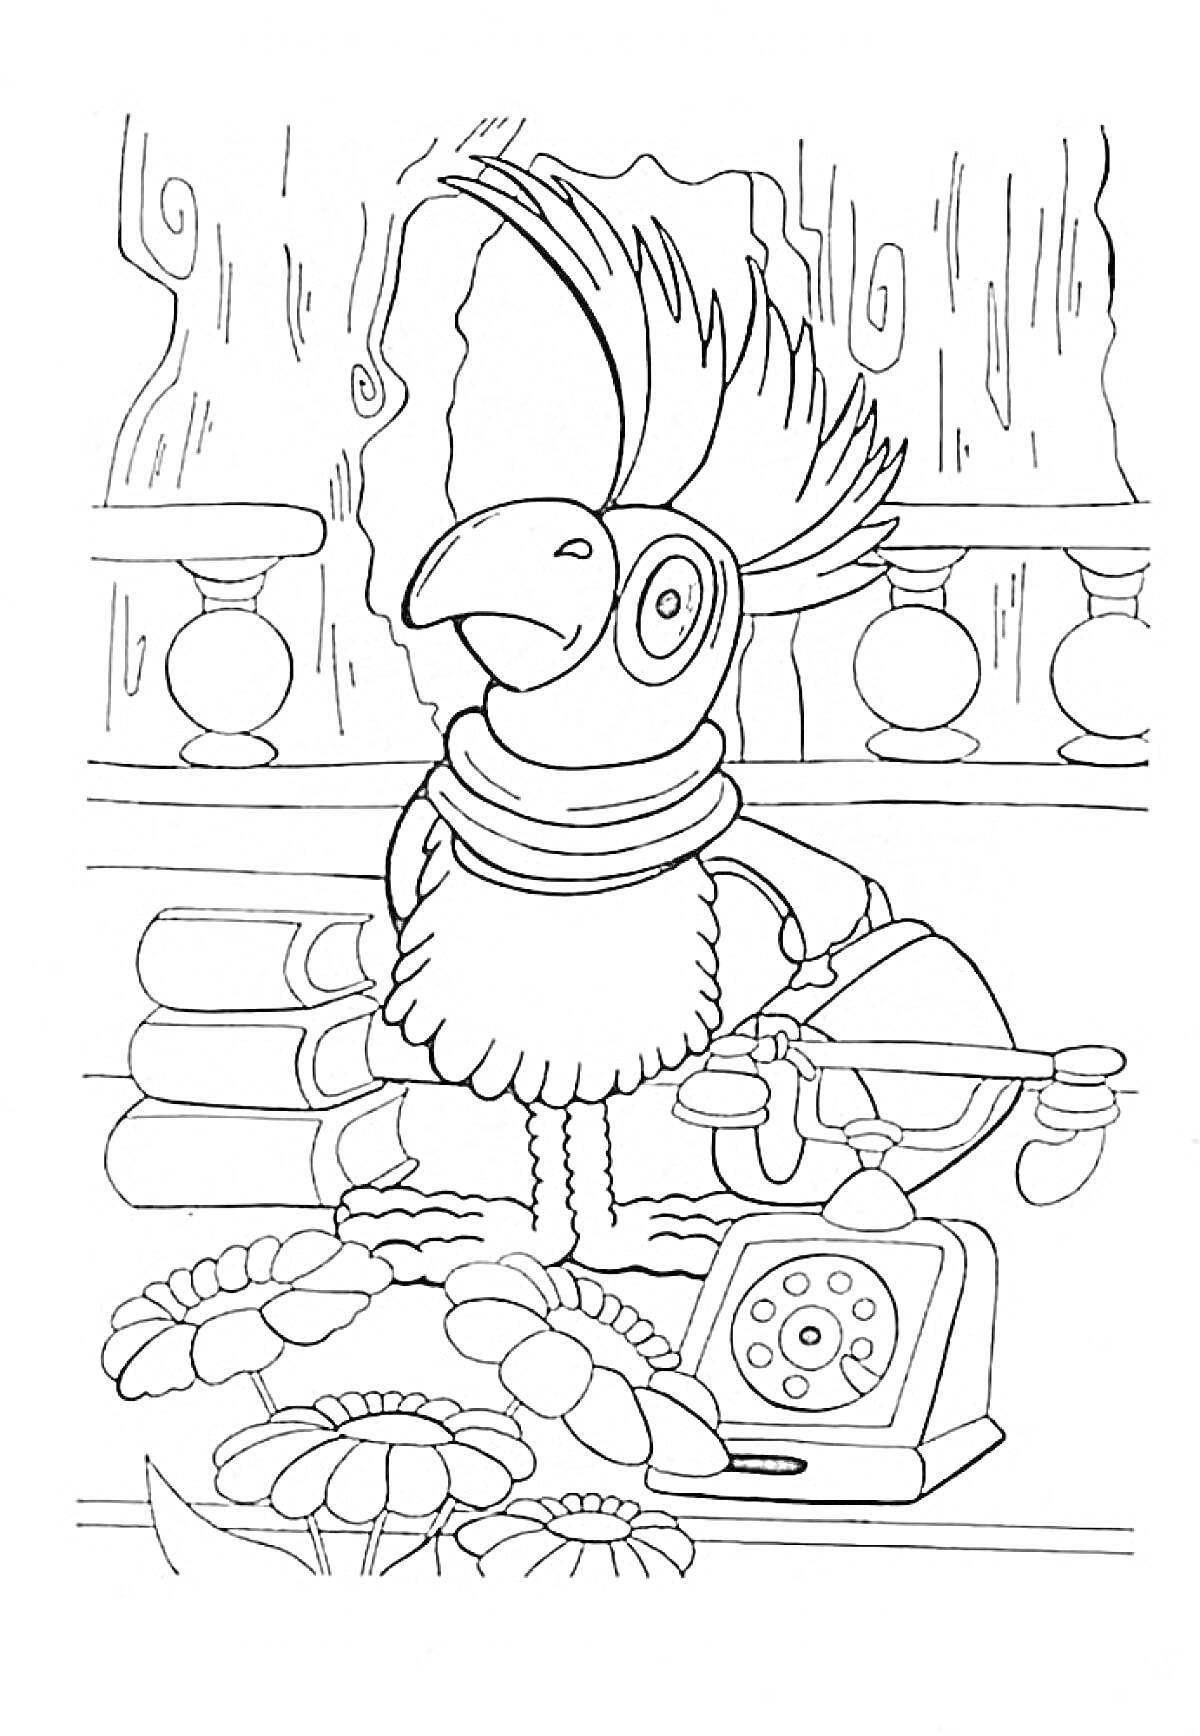 Попугай в кабинете Доктора Айболита/Папа Гусь(попугай в очках стоит на столе, рядом телефон, книги, цветы)